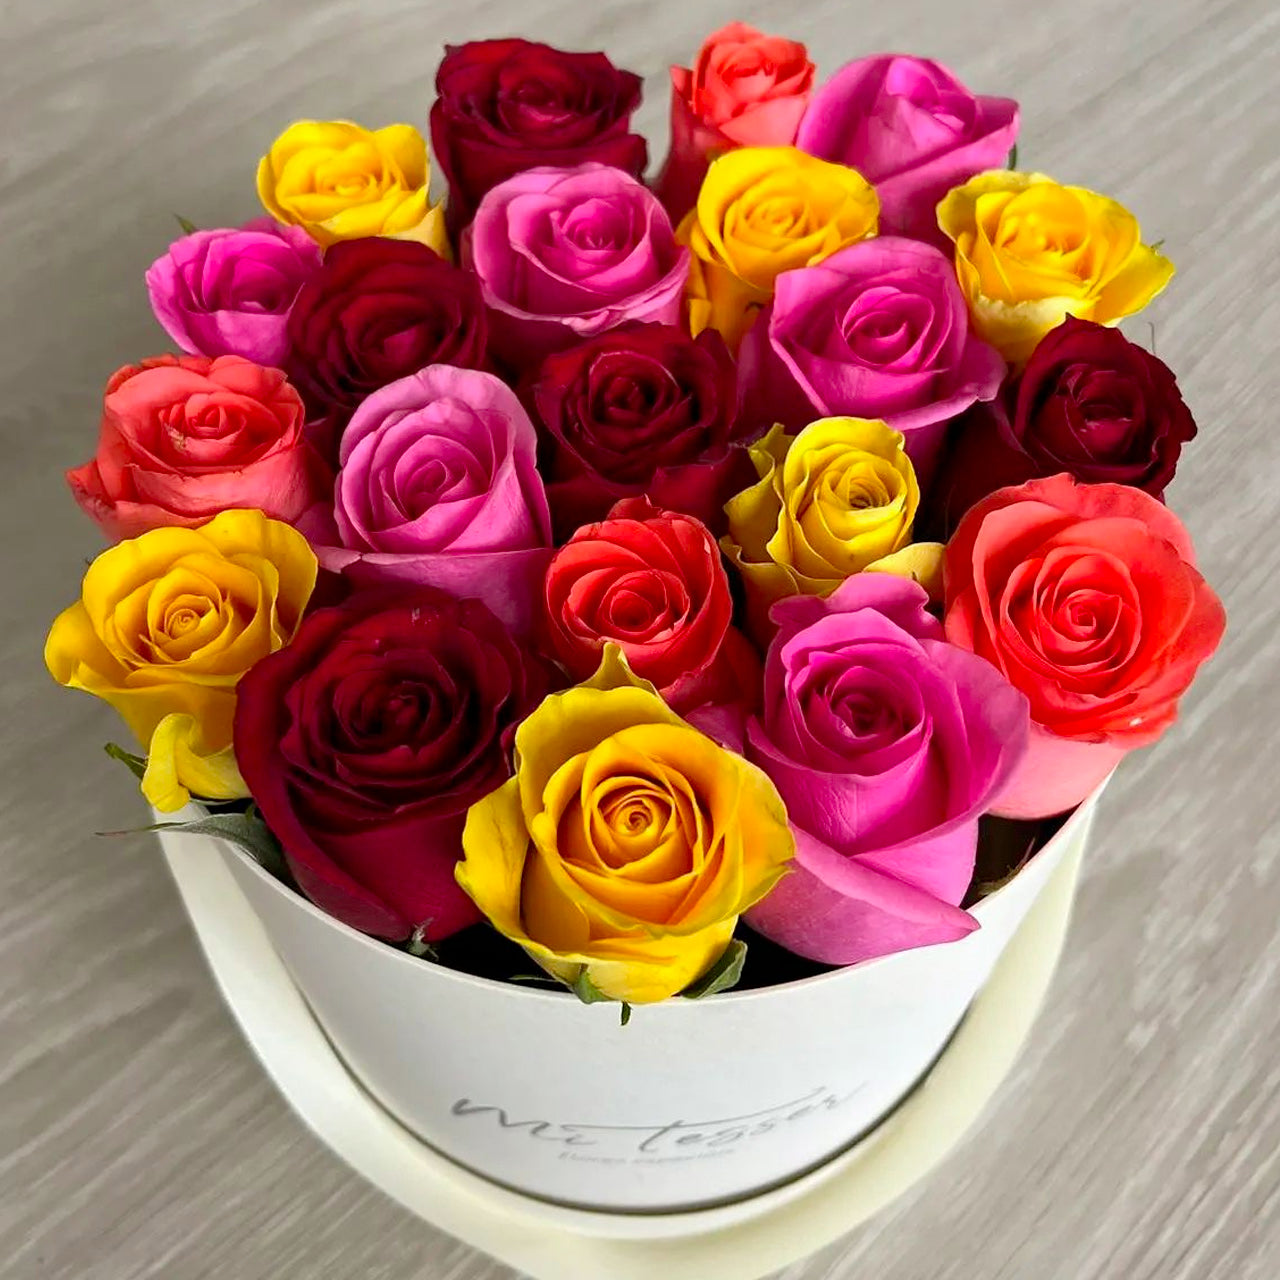 Flower-box redonda com rosas coloridas